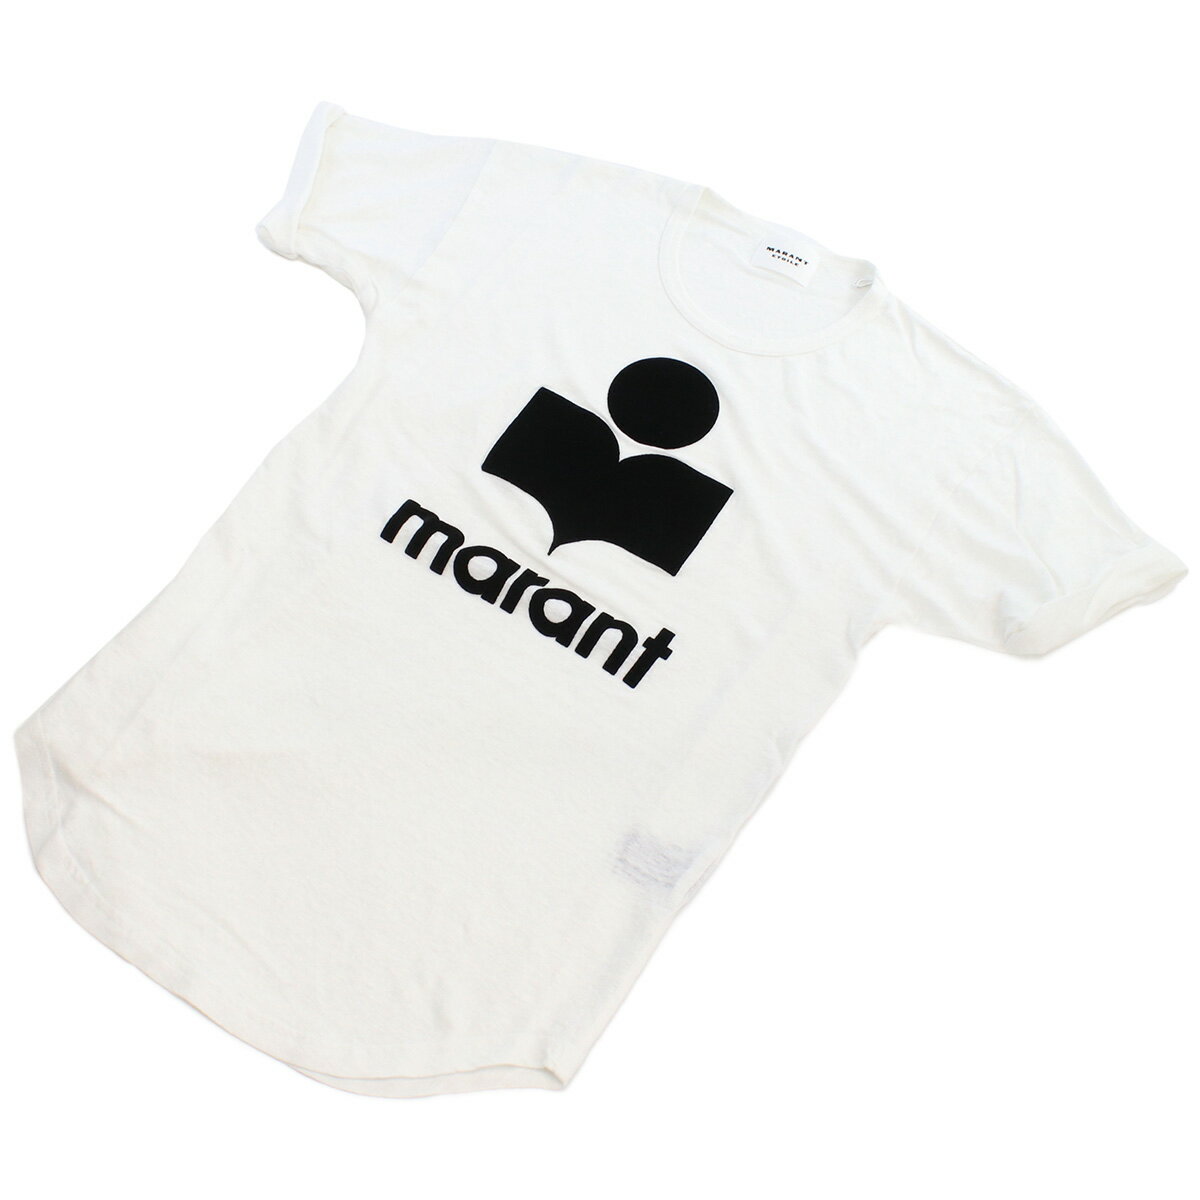 イザベルマラン ISABEL MARANT レディース－Tシャツ 白TシャツTS0004FA A1N09E 20WHWHITE ホワイト系 ts-01 tcld-bhsn